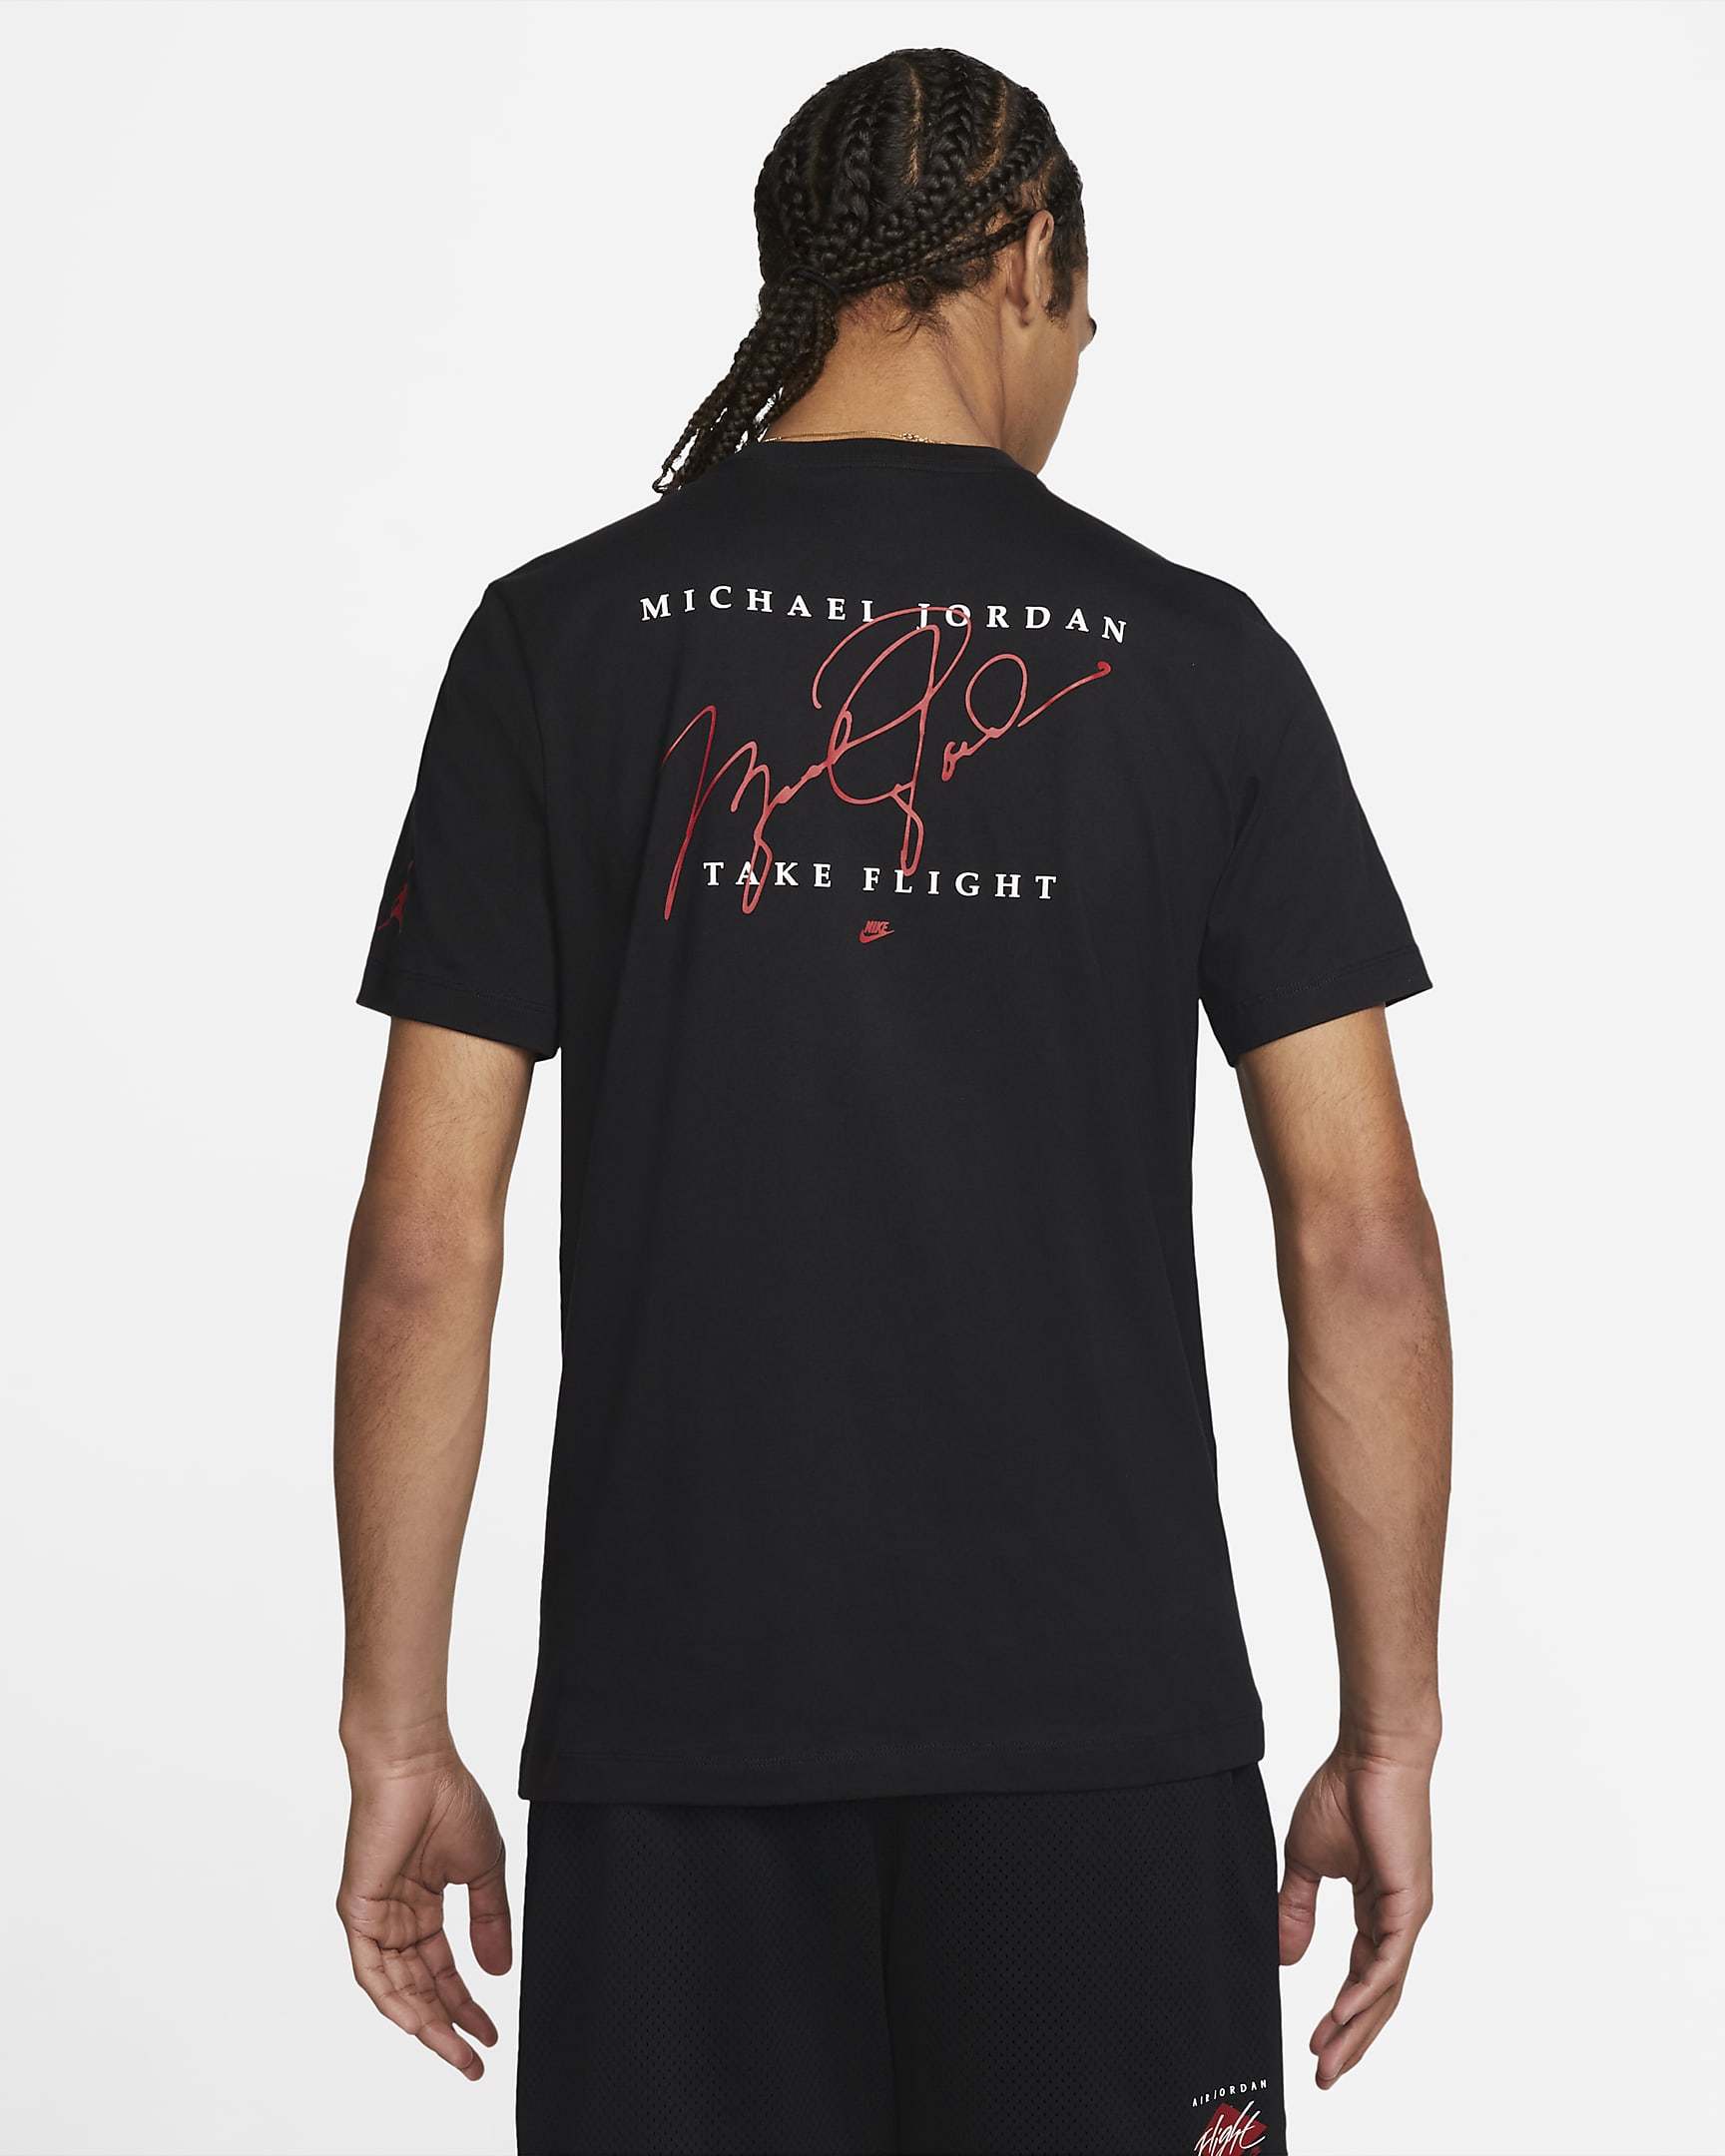 jordan-flight-essentials-mens-graphic-t-shirt-16sGpK-1.png